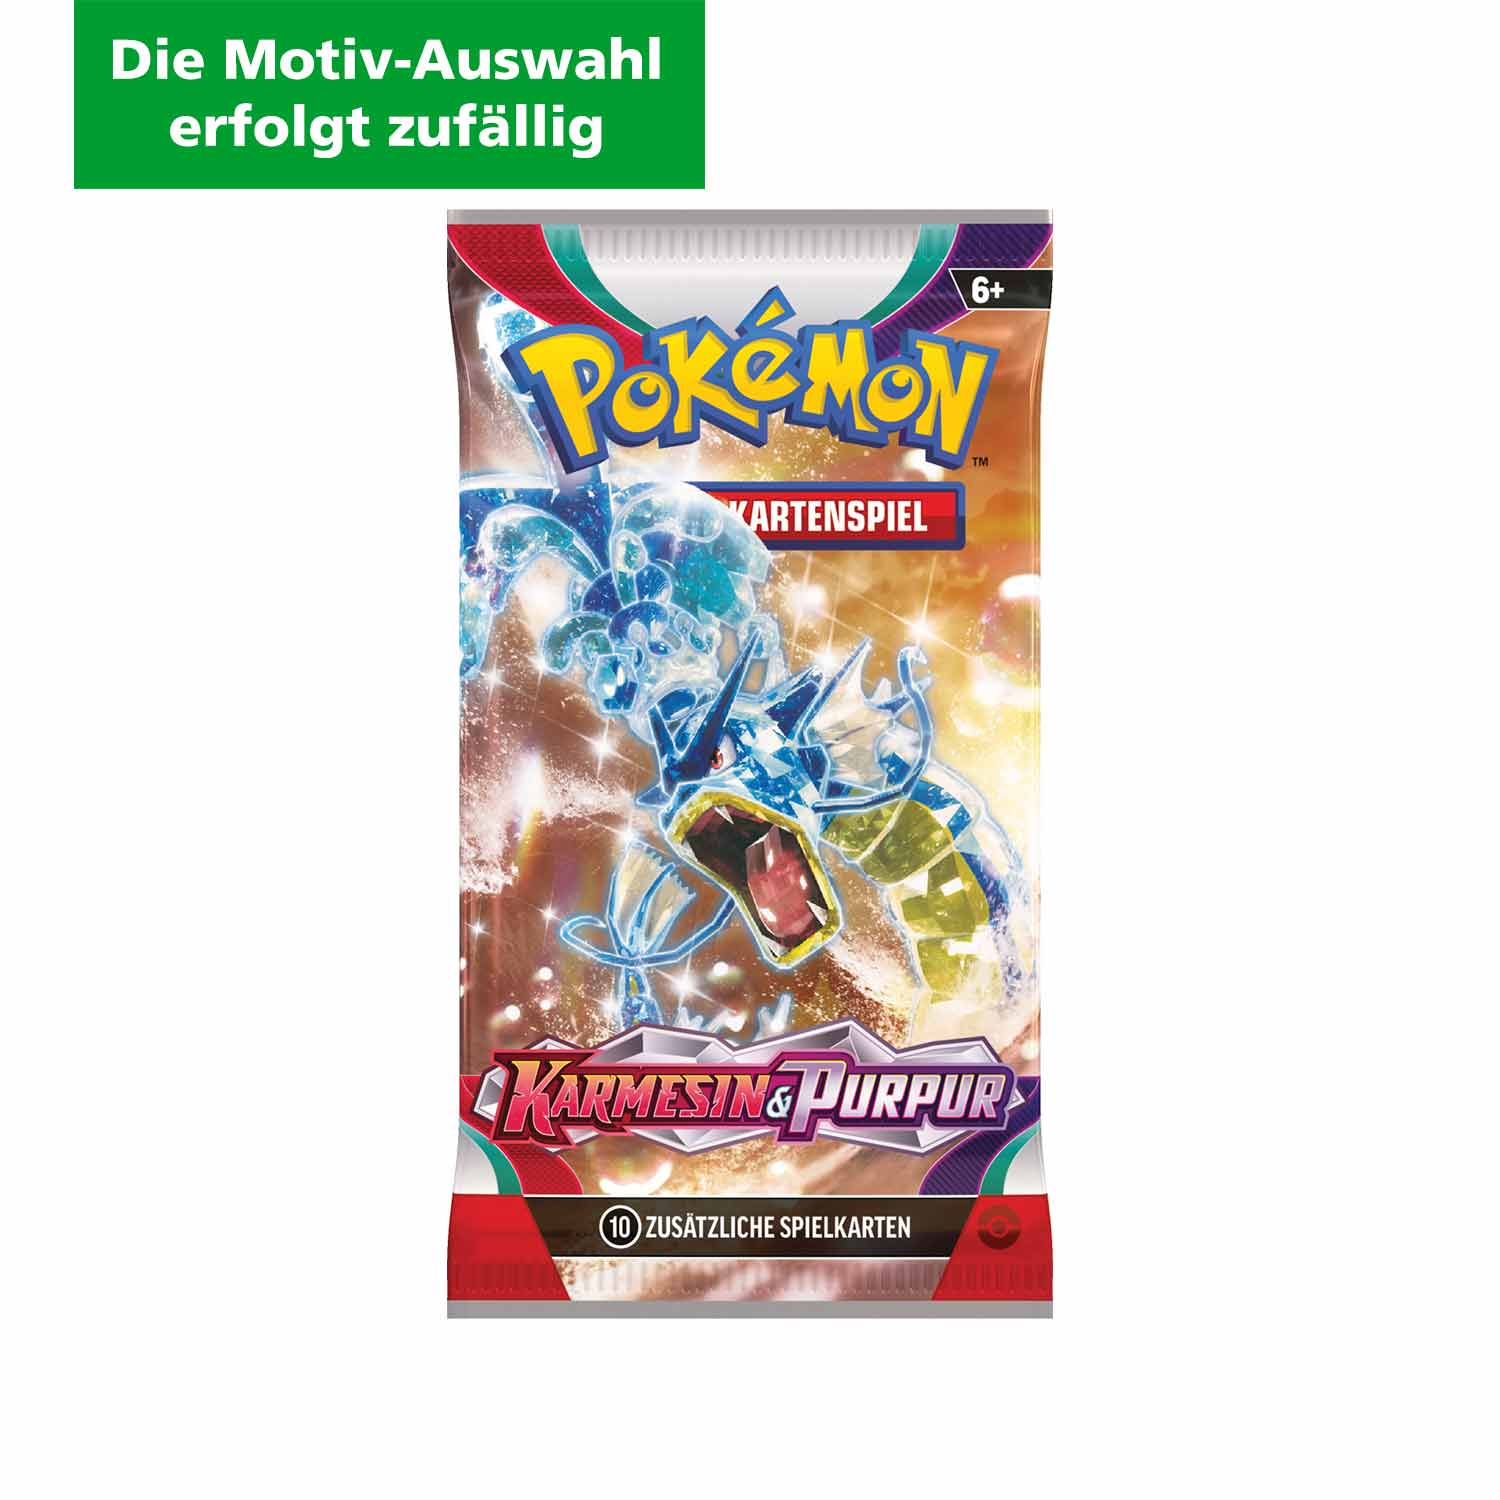 Pokémon Boosterpack Sammelkarten Karmesin & Purpur DE (Die Motiv-Auswahl erfolgt zufällig)